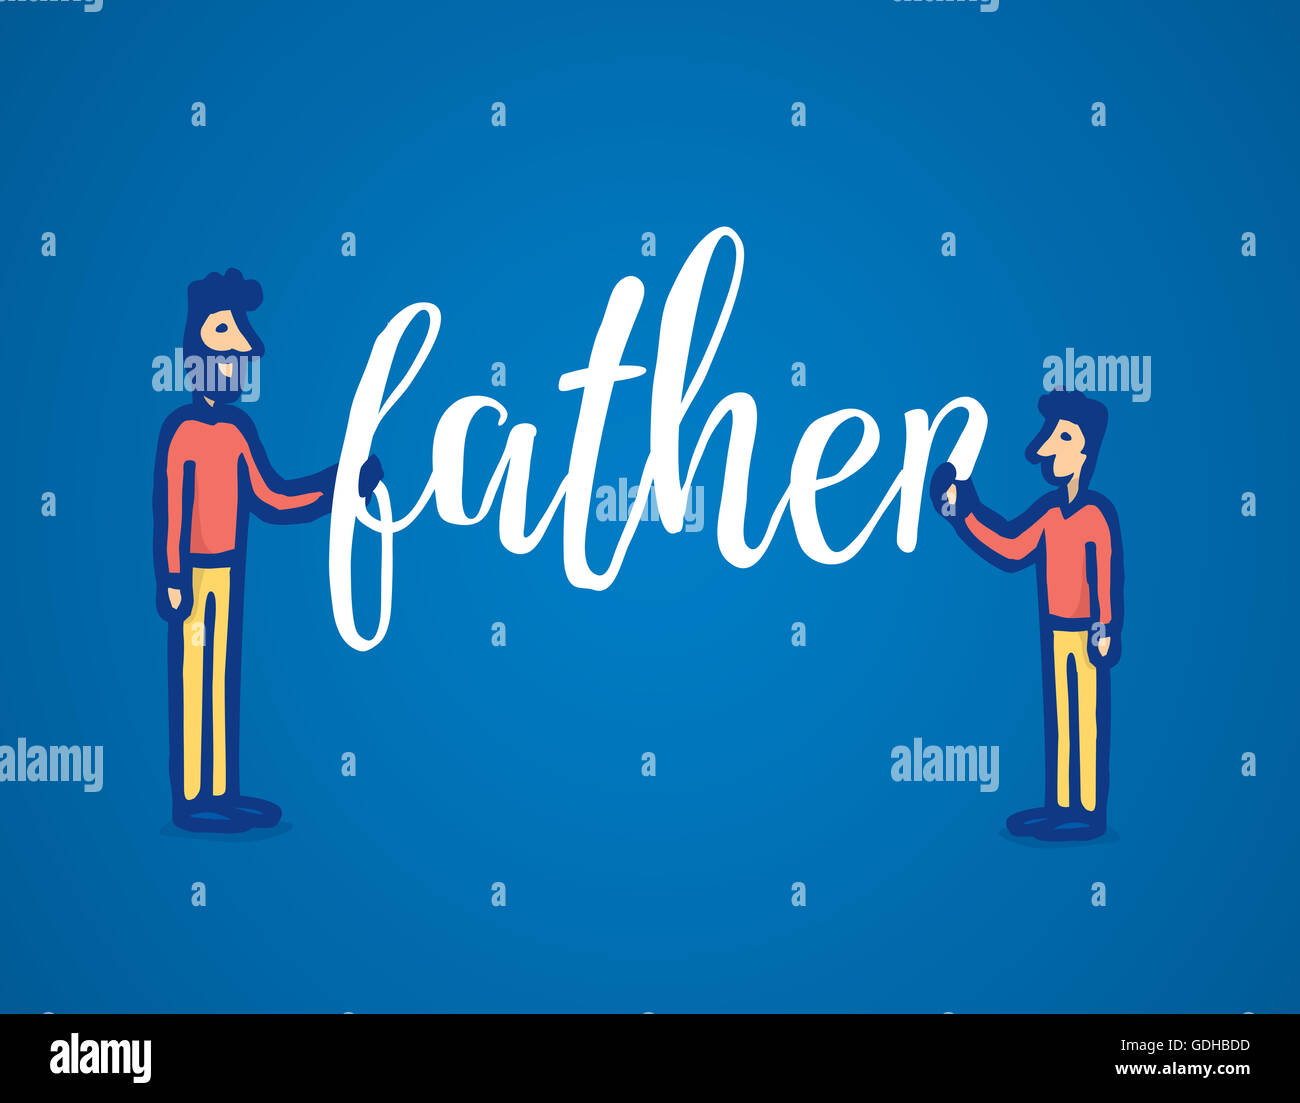 Ilustración de dibujos animados de padre e hijo celebrar juntos la palabra Foto de stock